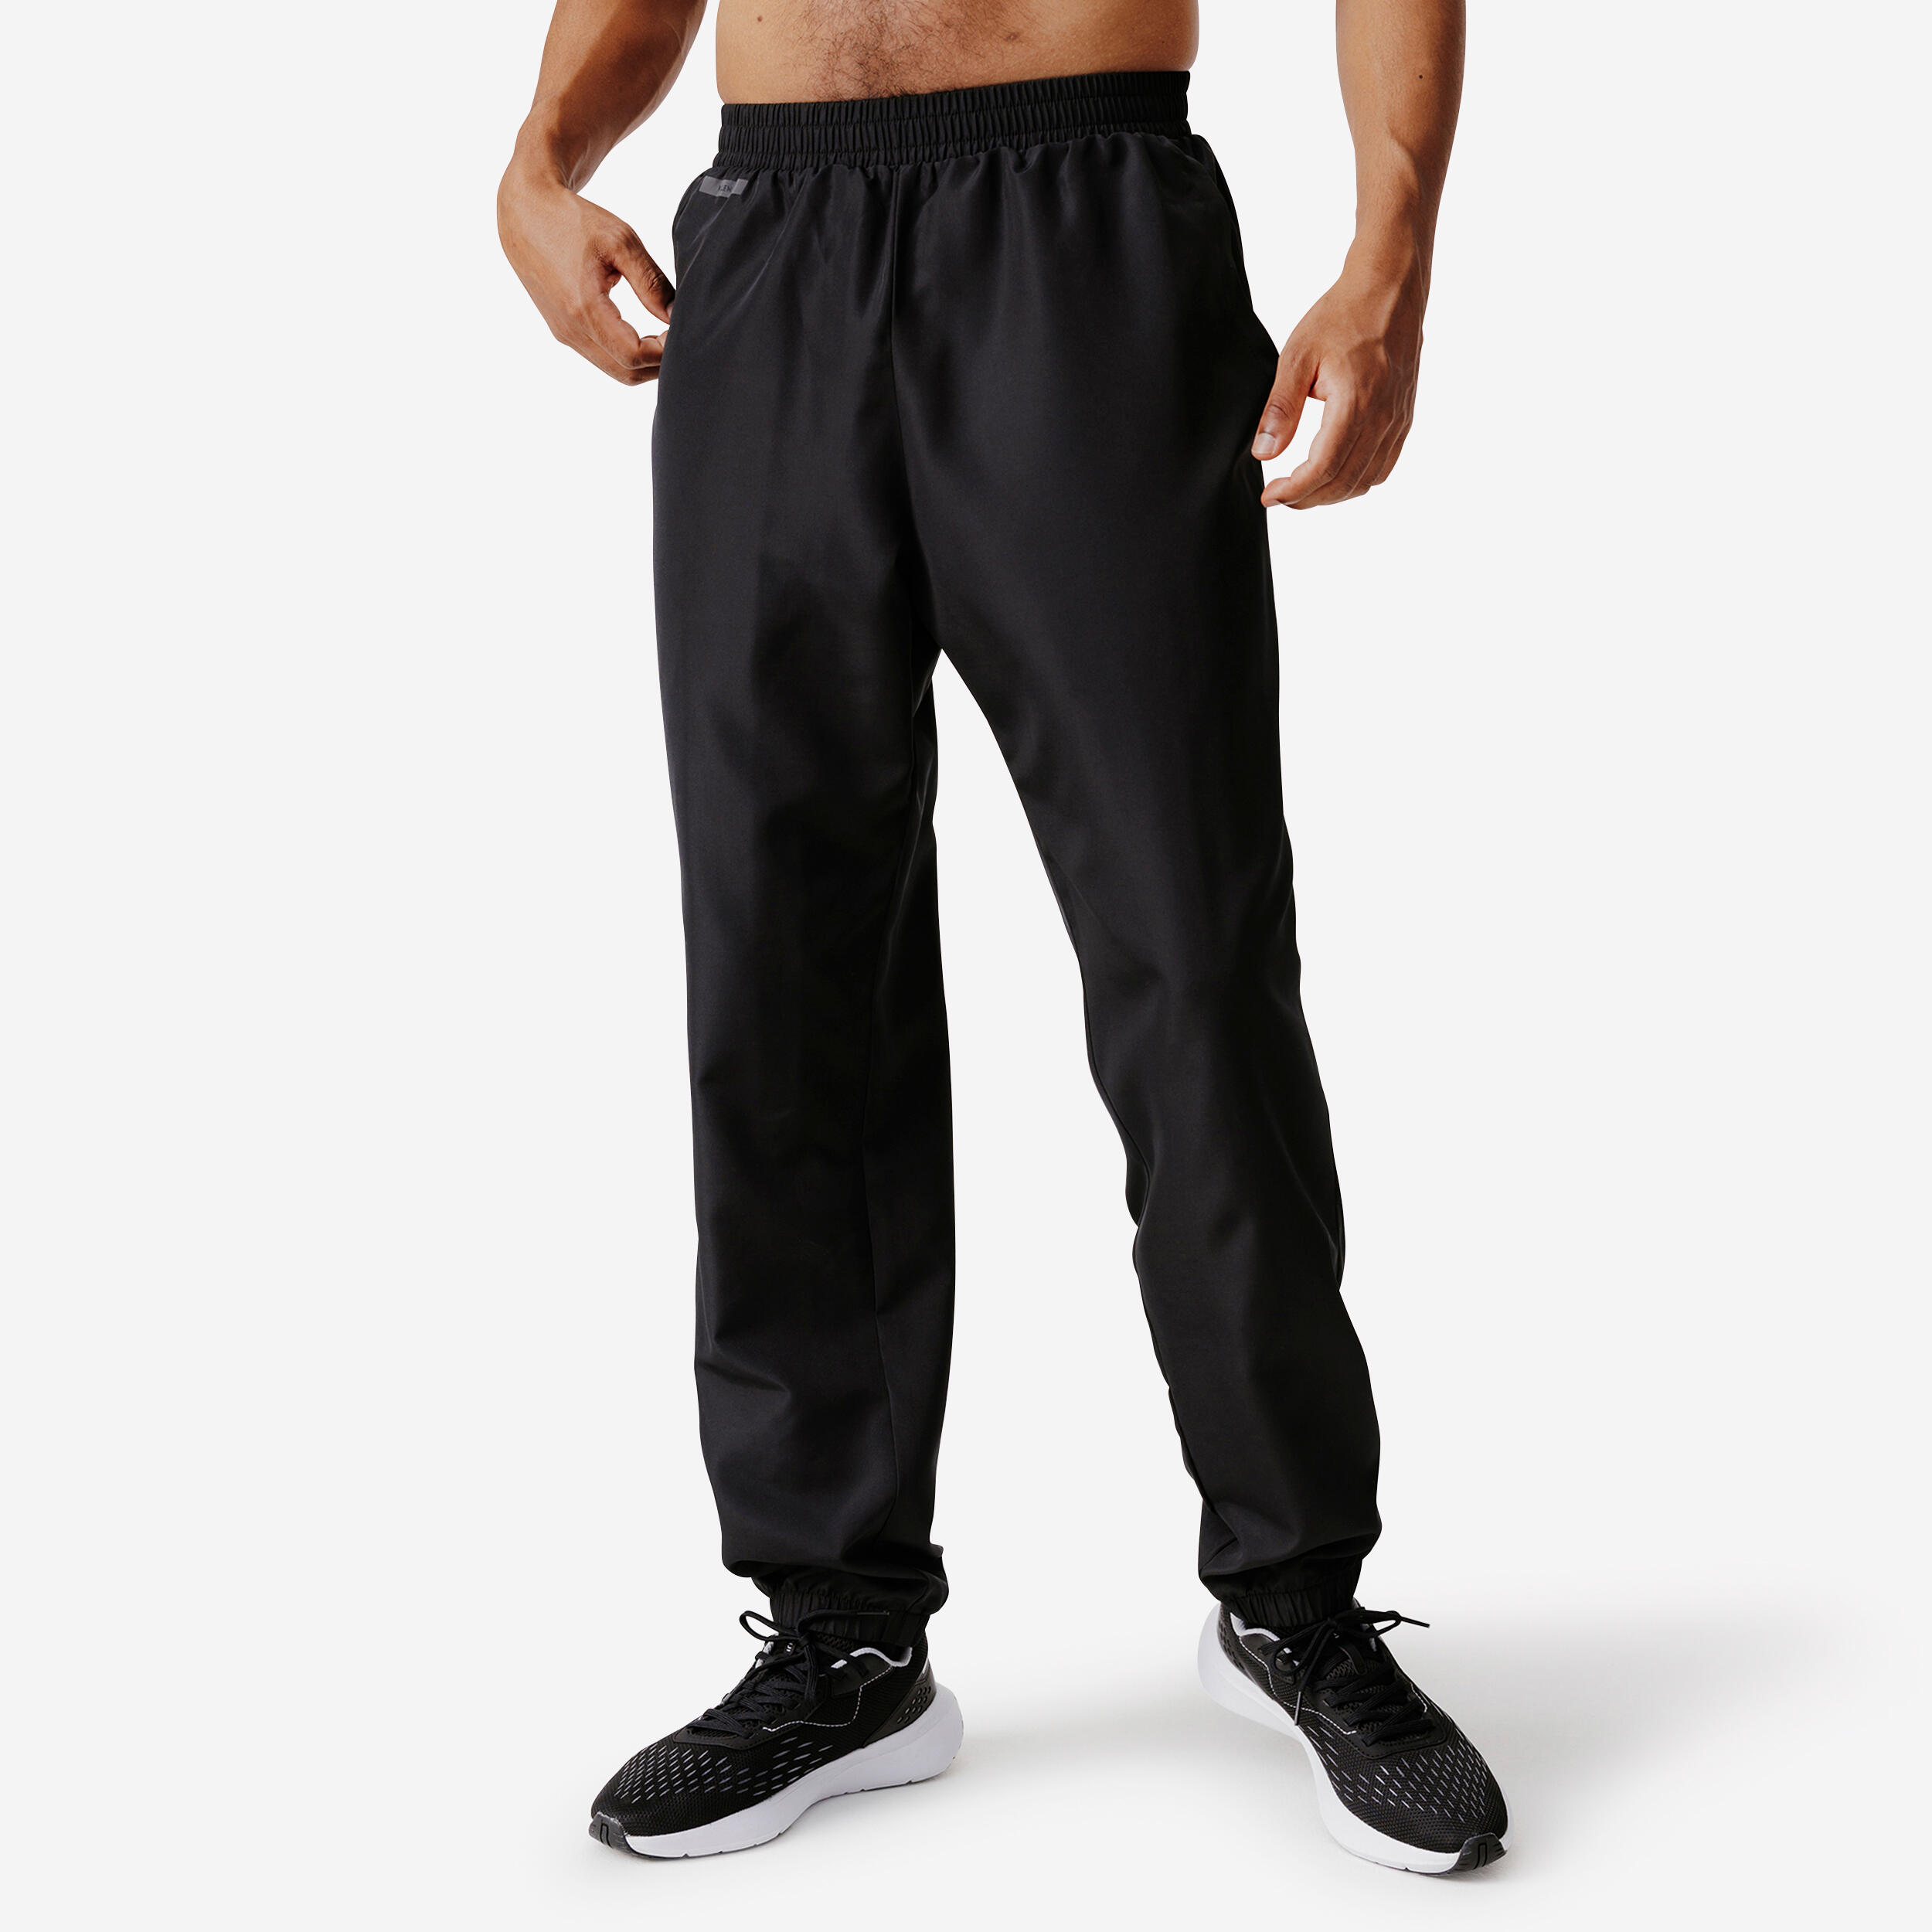 pantalon running respirant homme - dry 100 noir - kalenji